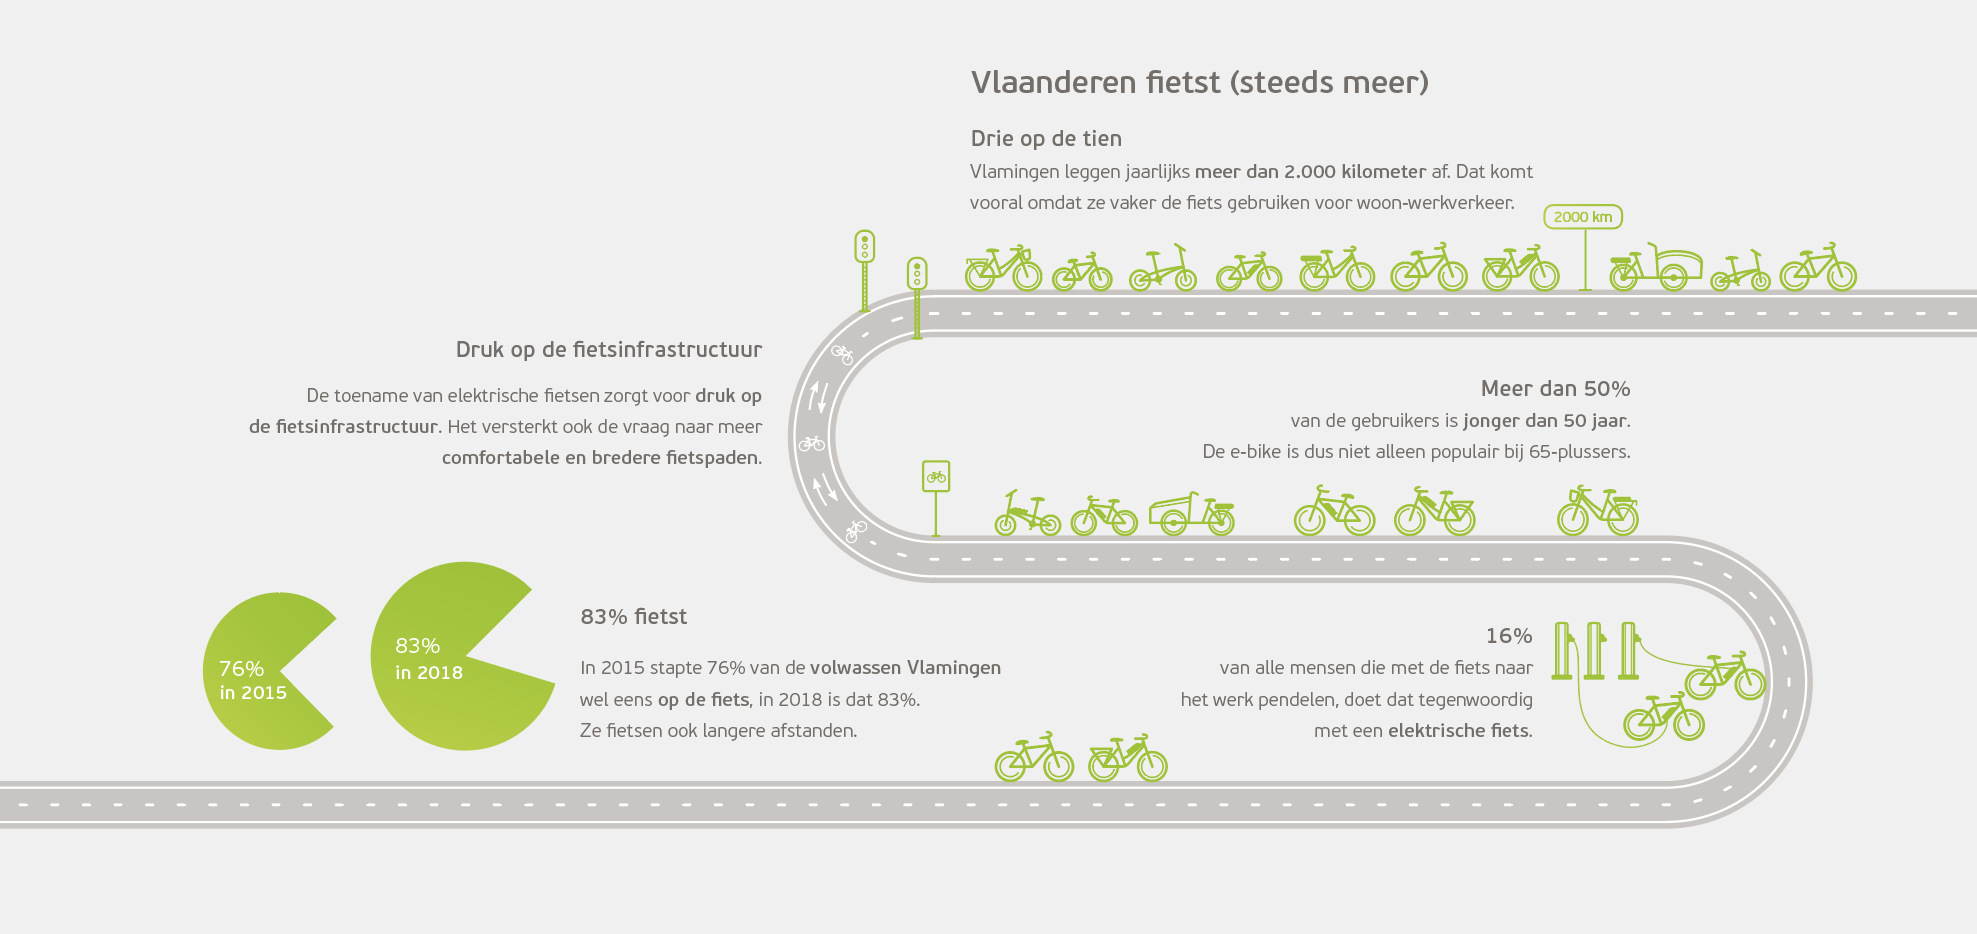 Vlaanderen fietst (steeds meer)